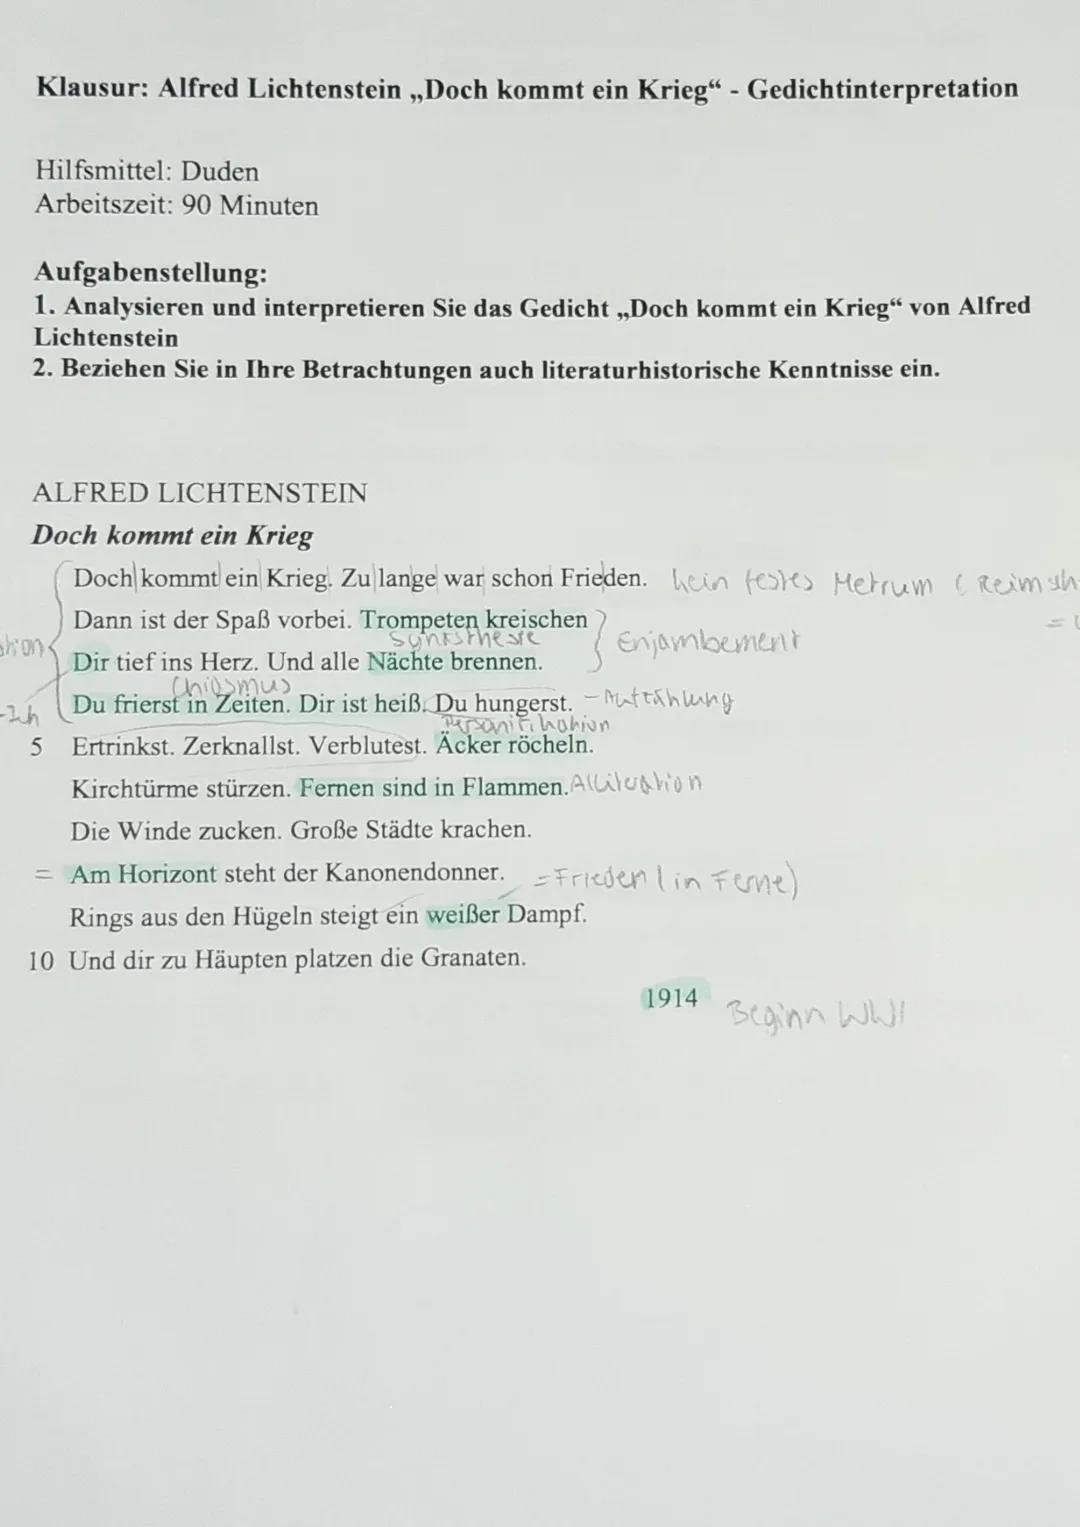 Klausur: Alfred Lichtenstein ,,Doch kommt ein Krieg" - Gedichtinterpretation
Hilfsmittel: Duden
Arbeitszeit: 90 Minuten
Aufgabenstellung:
1.